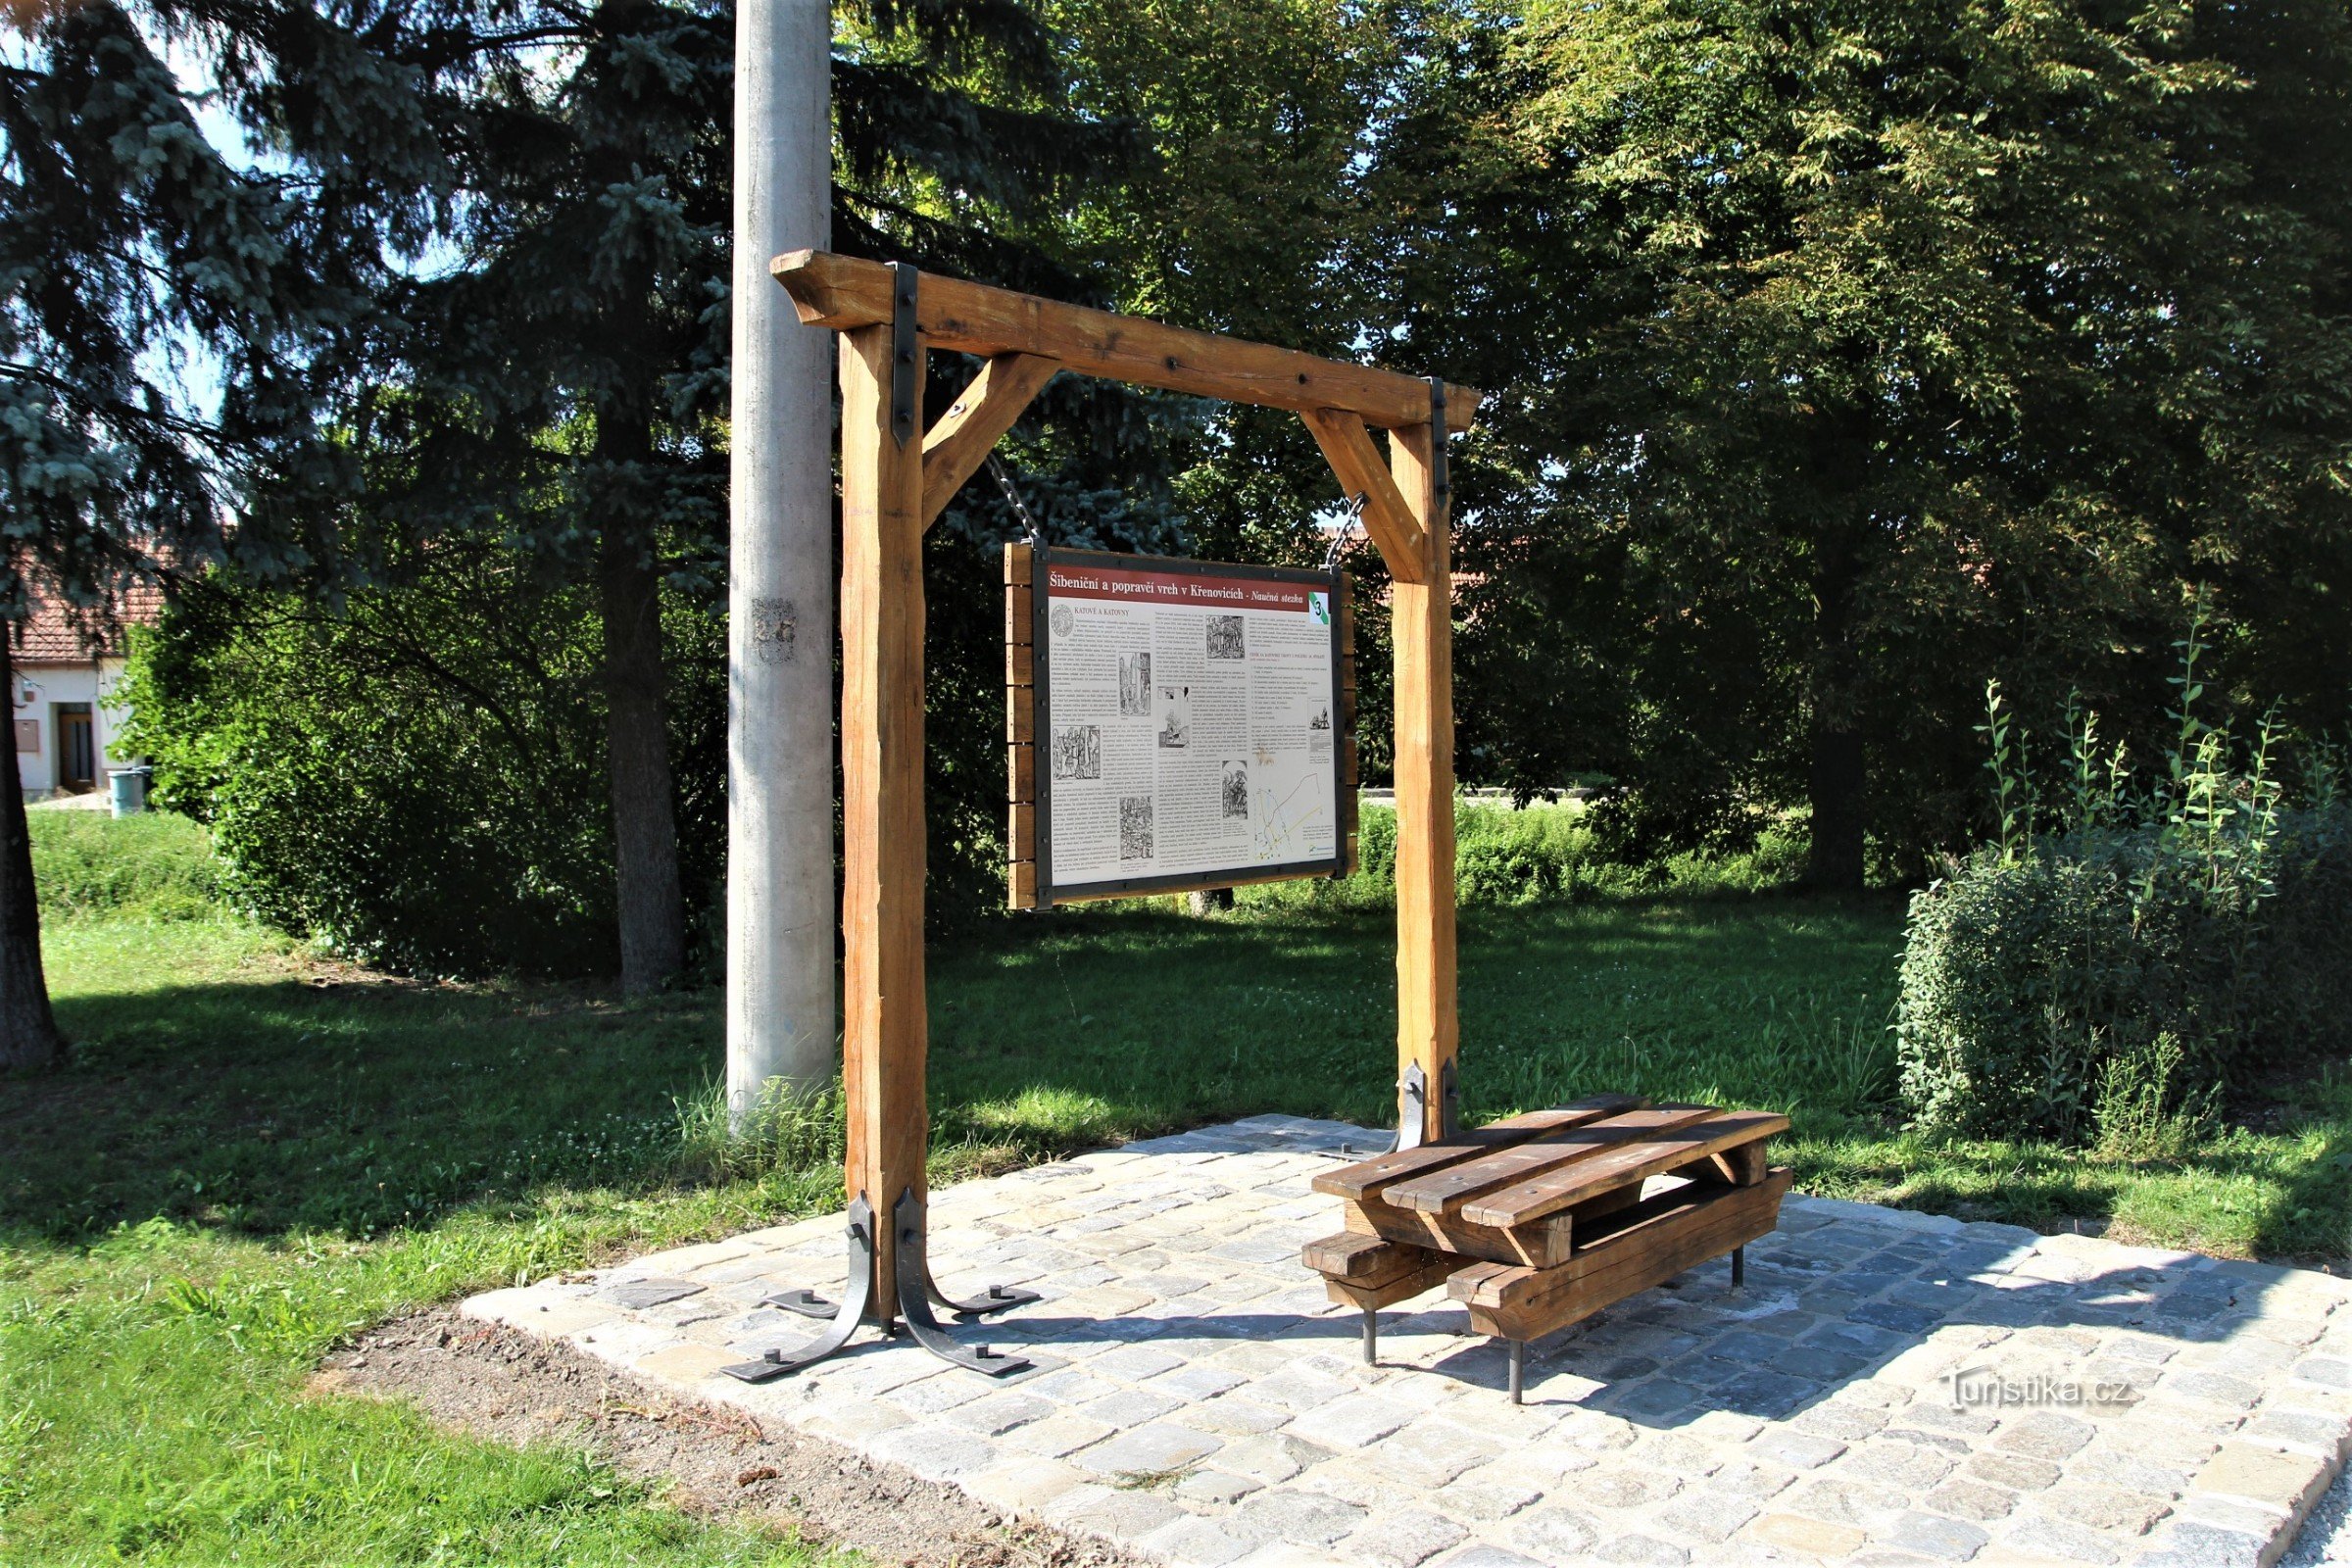 La terza tappa del percorso didattico si trova all'inizio di via Mlýnská